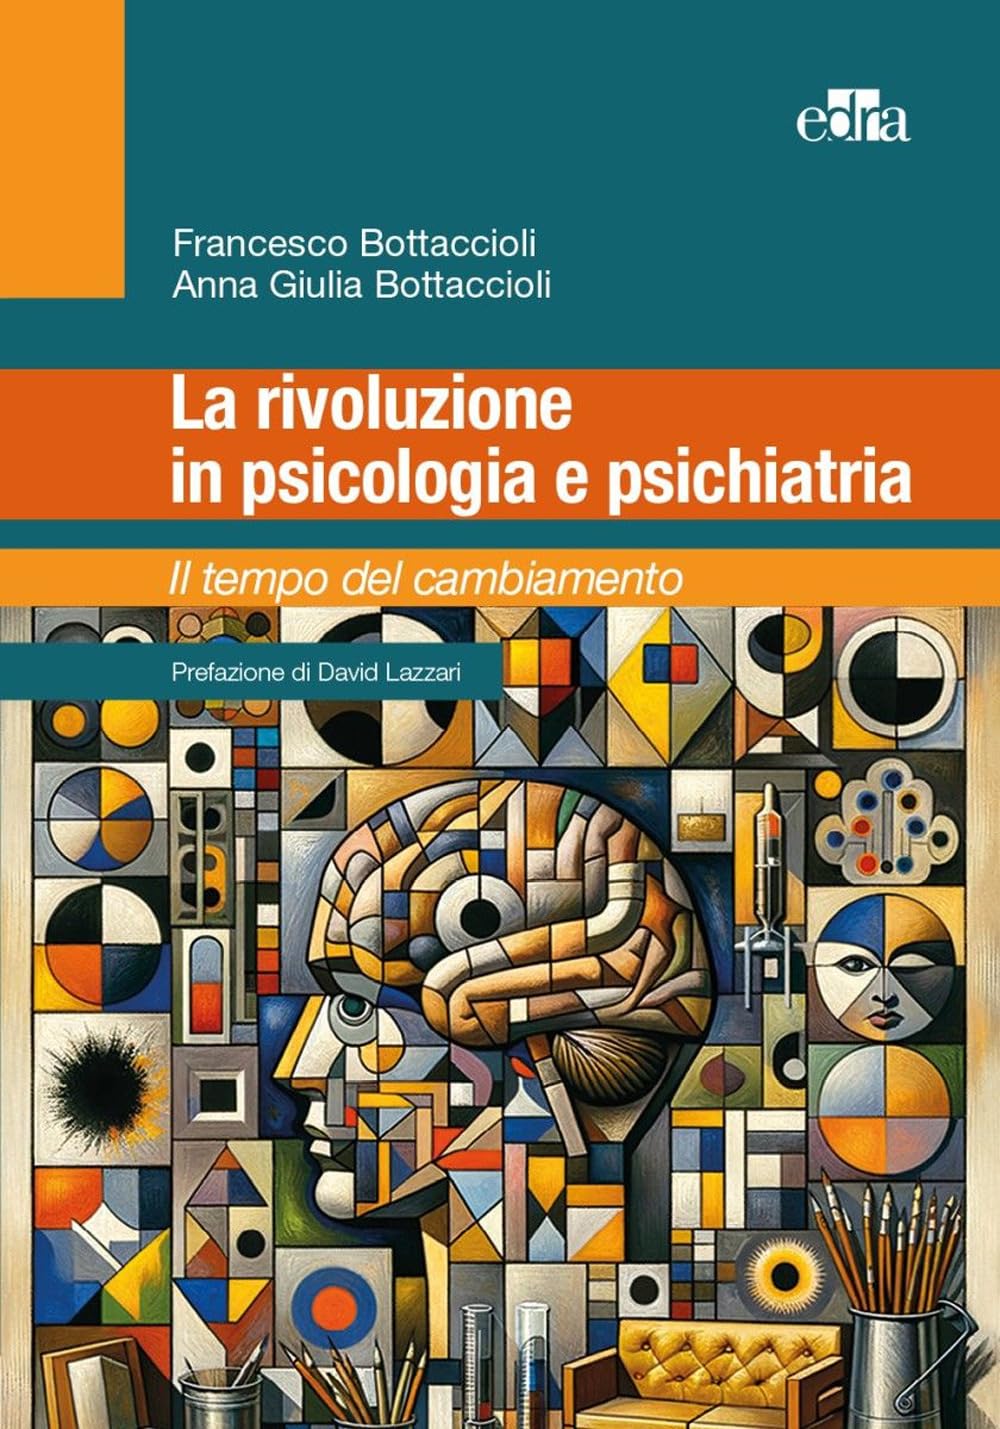 La rivoluzione in psicologia e psichiatria - F. Bottacccioli - A.G. Bottaccioli